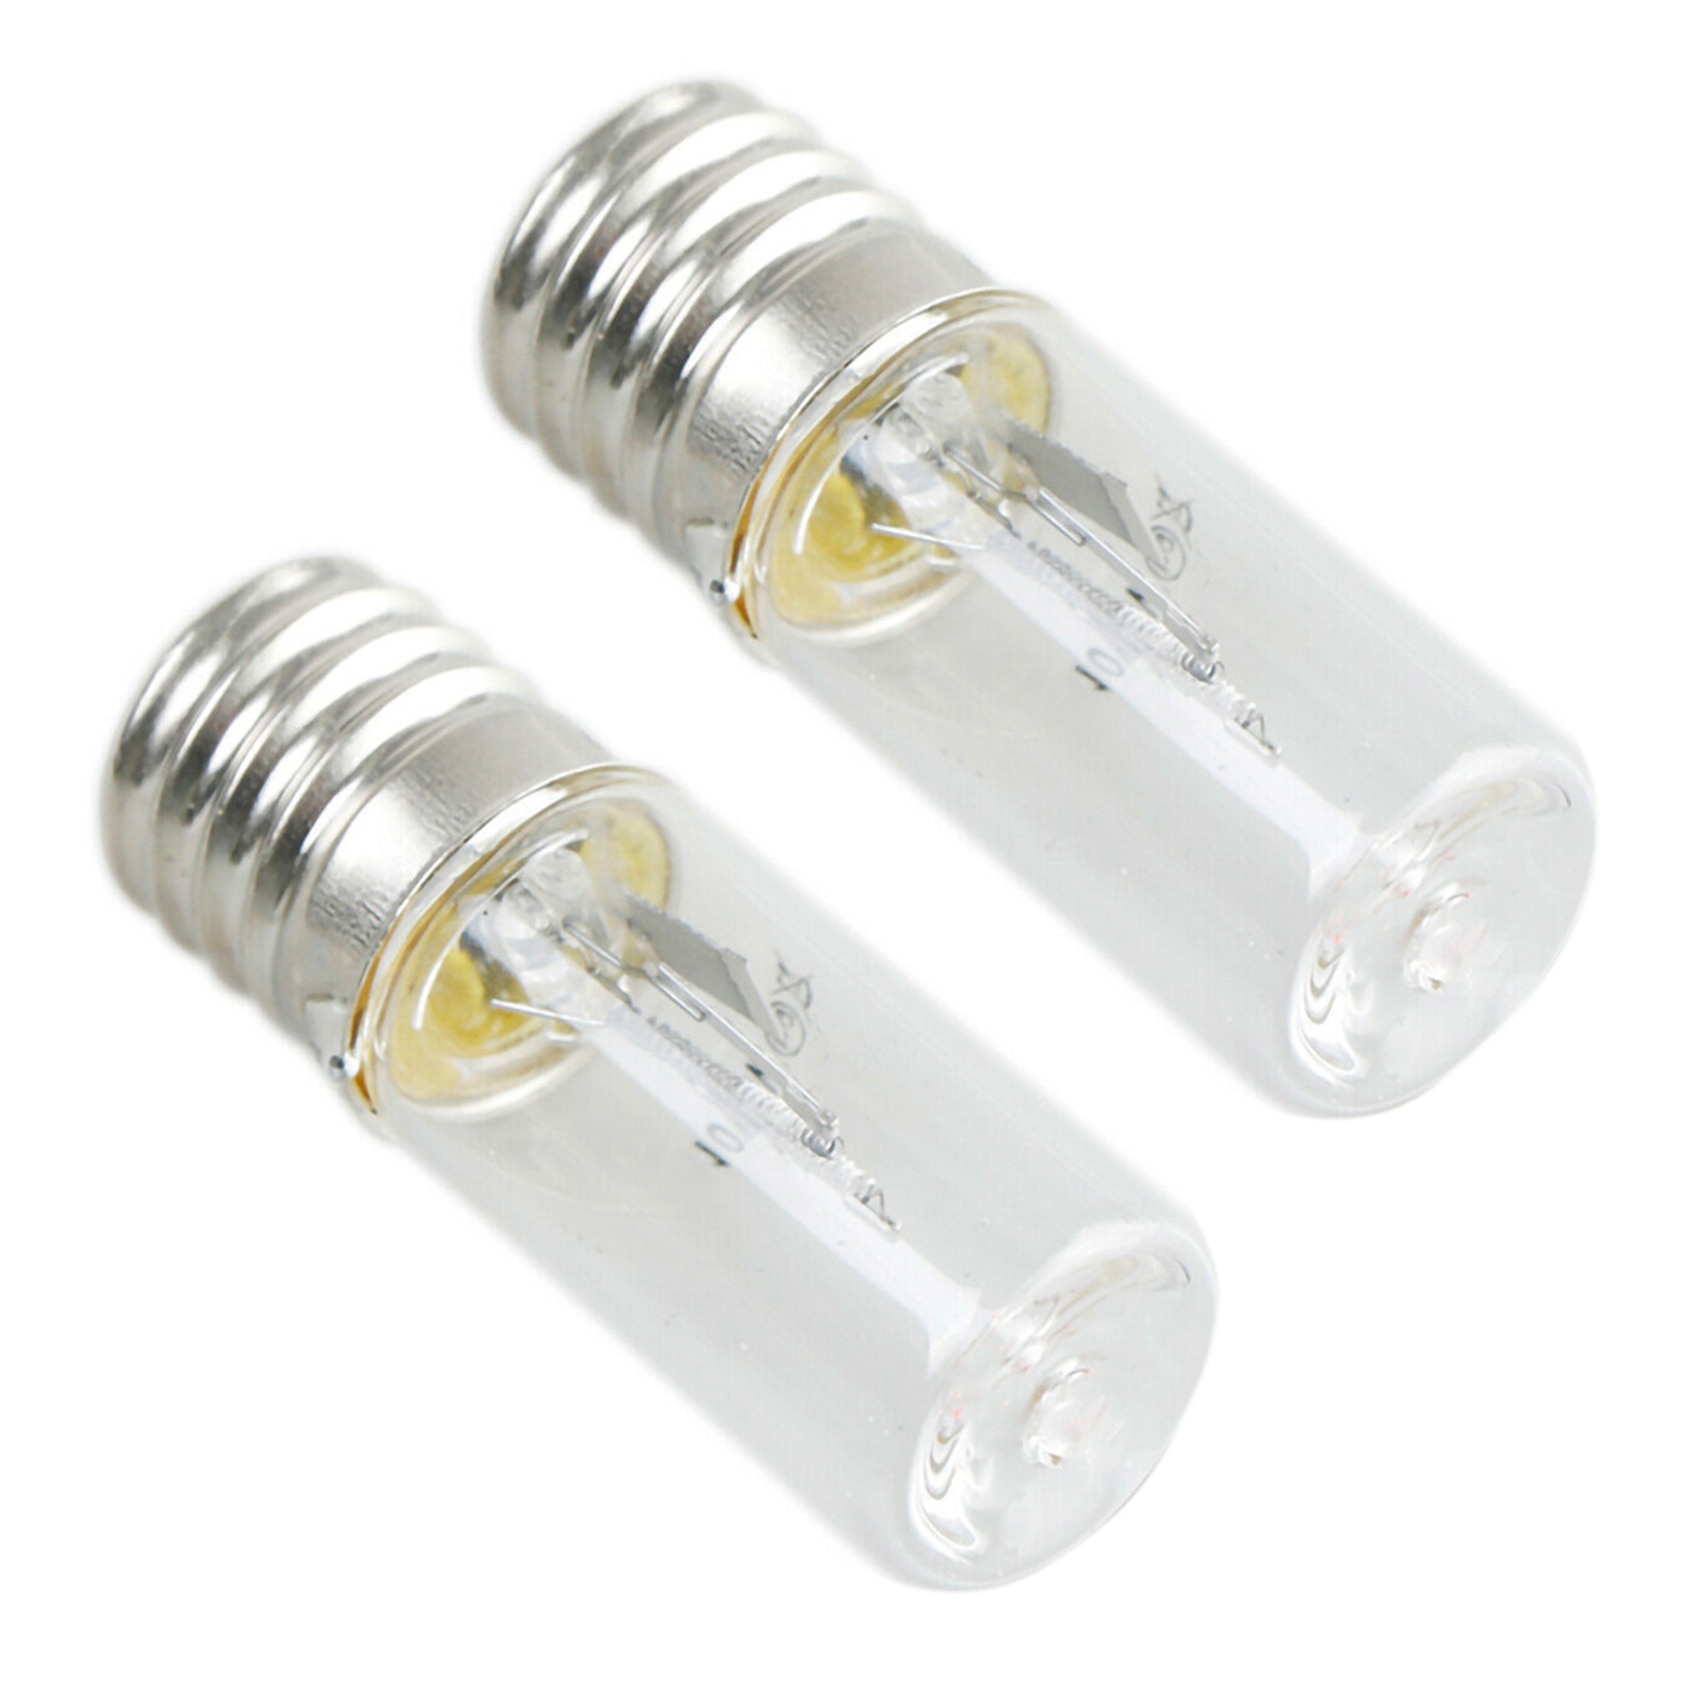 2X UVC 진드기 조명 살균 램프 전구 자외선 DC 10V UV 라이트 튜브 전구 E17 3W 소독 석영 램프, 크리에이티브 살균 램프 살균 램프 전구